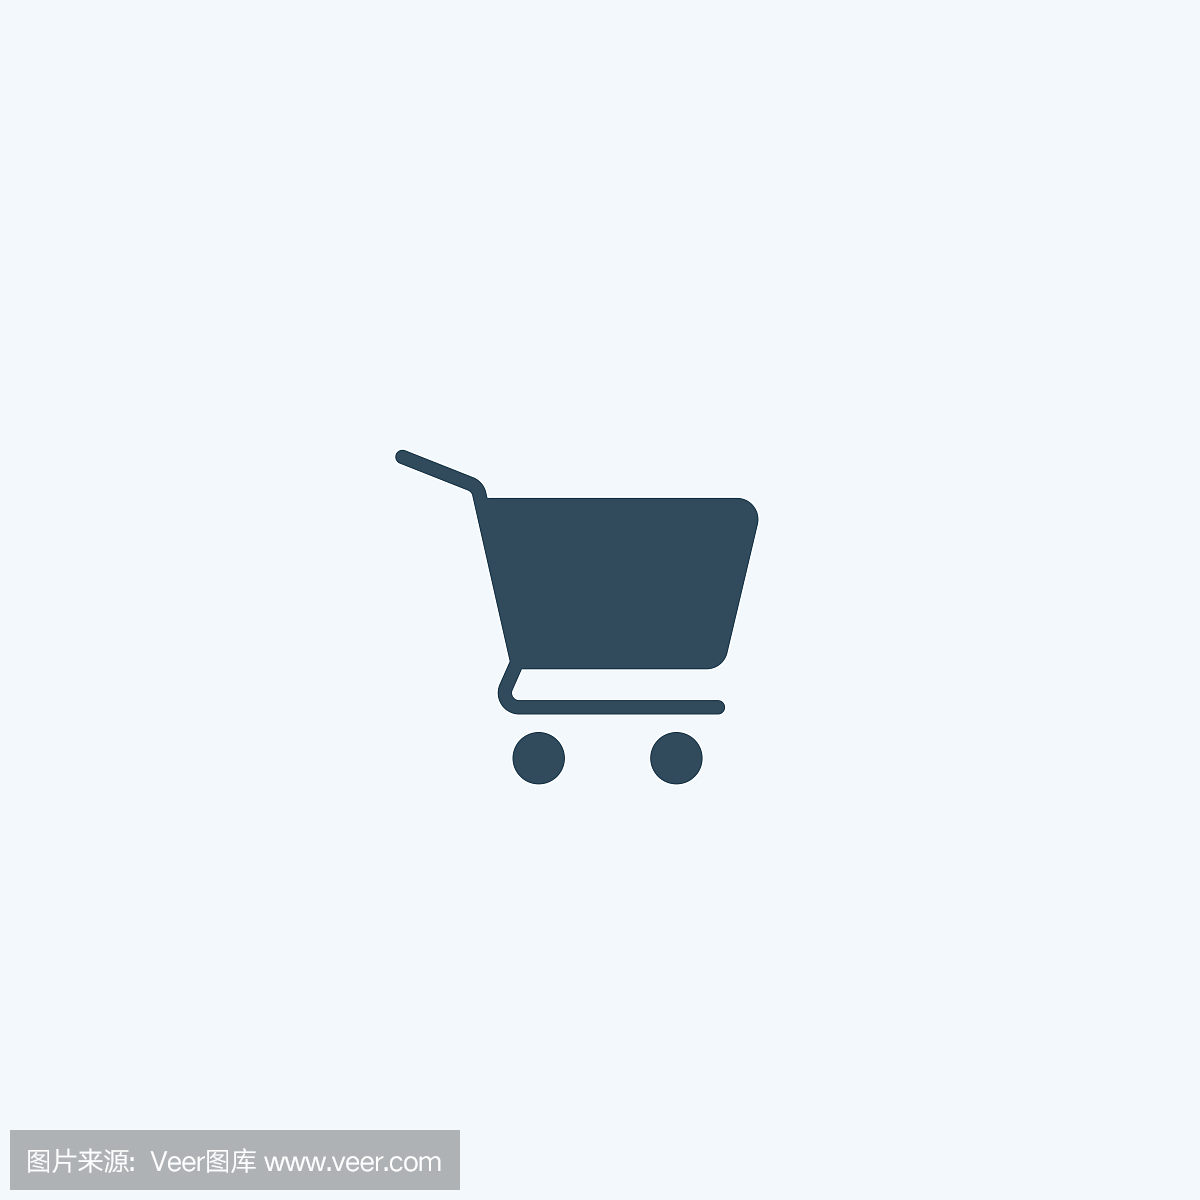 购物车图标。销售,购买,商店,市场,篮子,商业向量标志